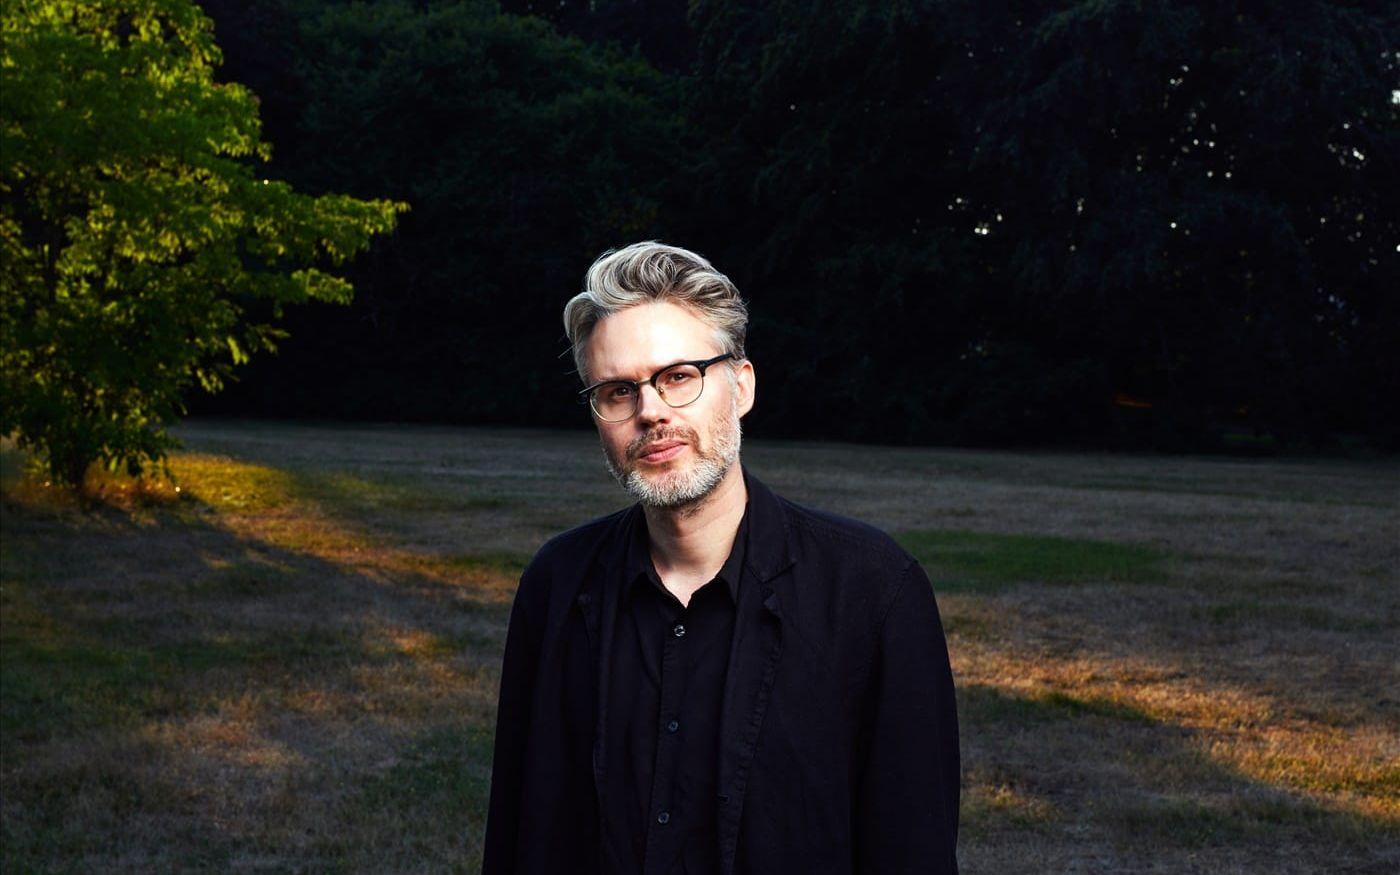 Karl Daniel Törnkvist är född 1986 i Torshälla och bor nu i Malmö. Han har gått litterär gestaltning på Akademin Valand i Göteborg. Hans debut ”Himlen” (2020) blev nominerad till Katapultpriset och belönades med Jan Fridegårdspriset.